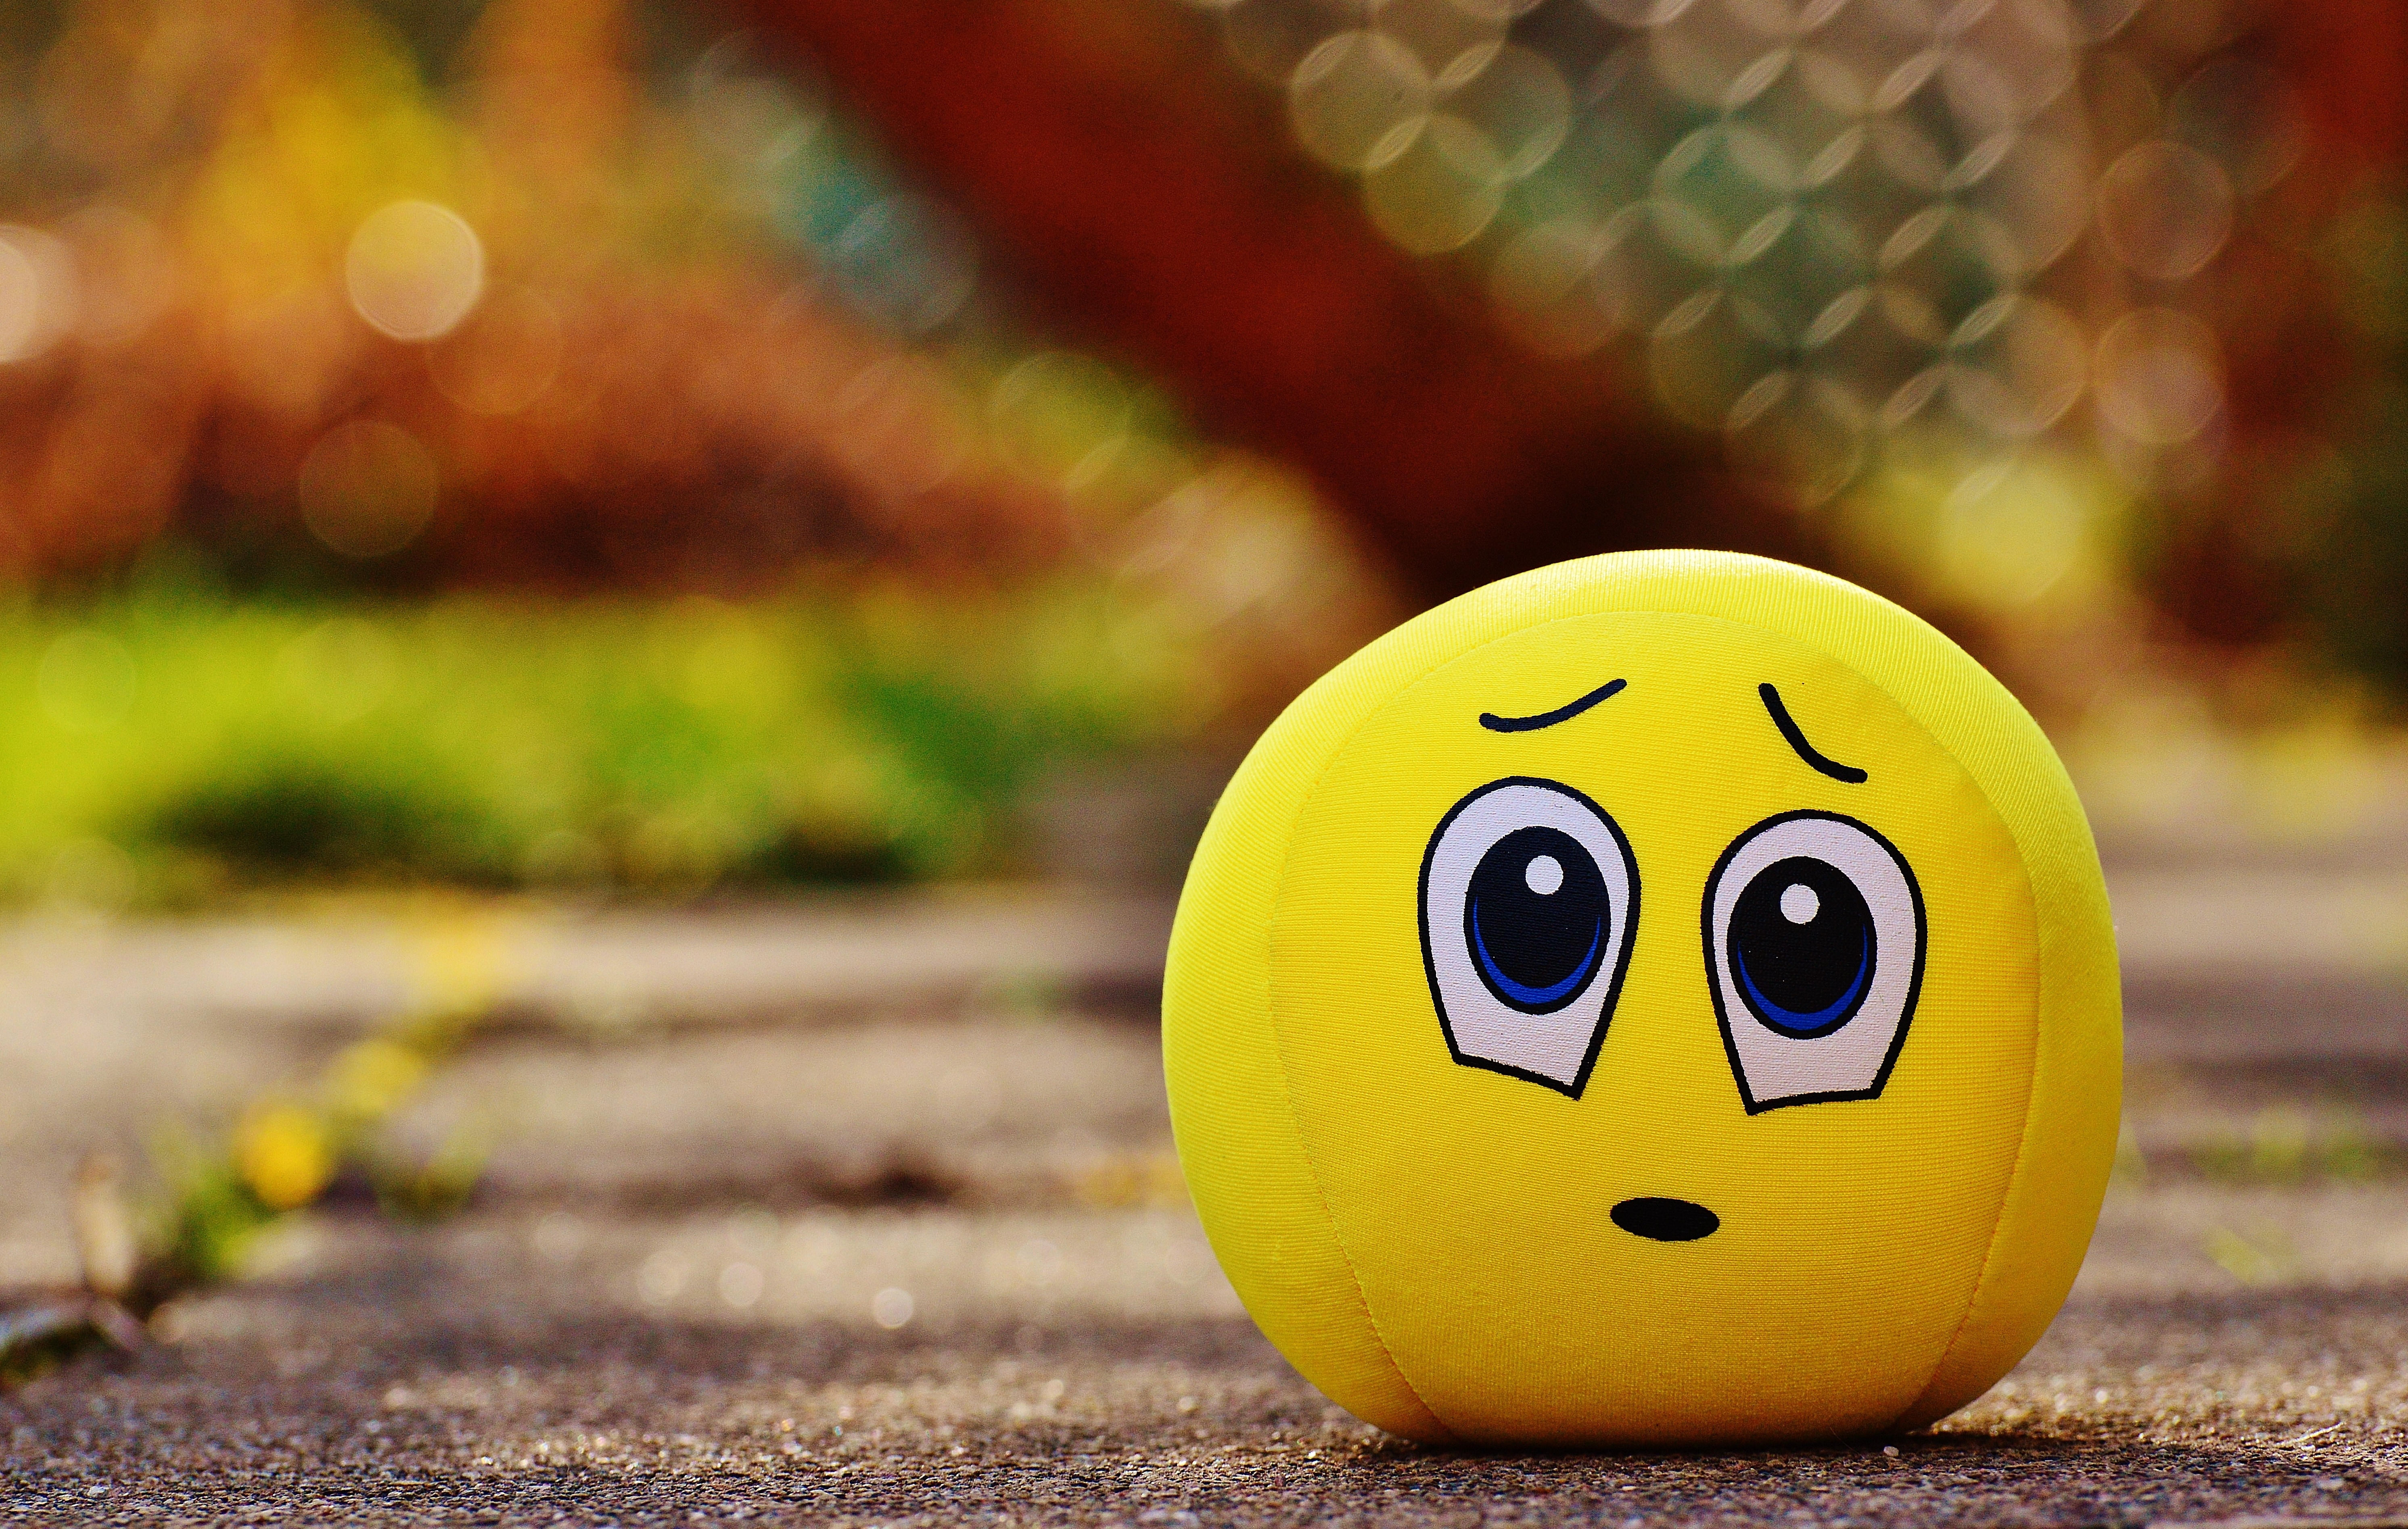 round yellow smiley emoticon plush toy